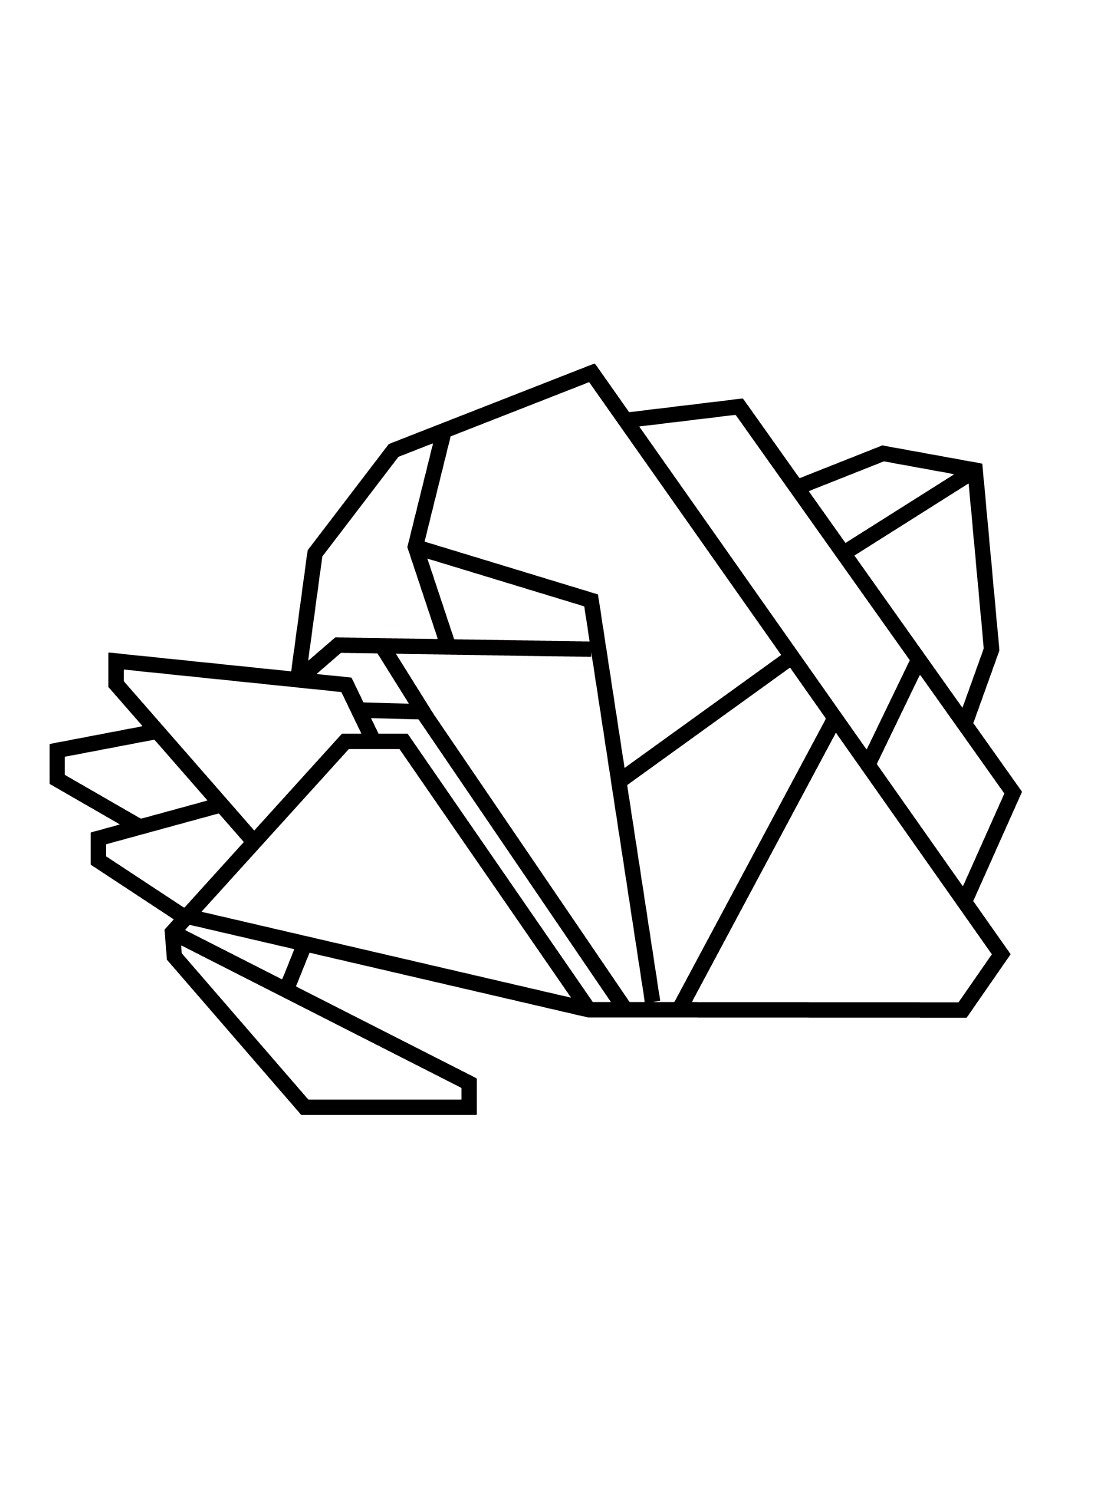 Einsiedlerkrebs-Origami von Einsiedlerkrebs